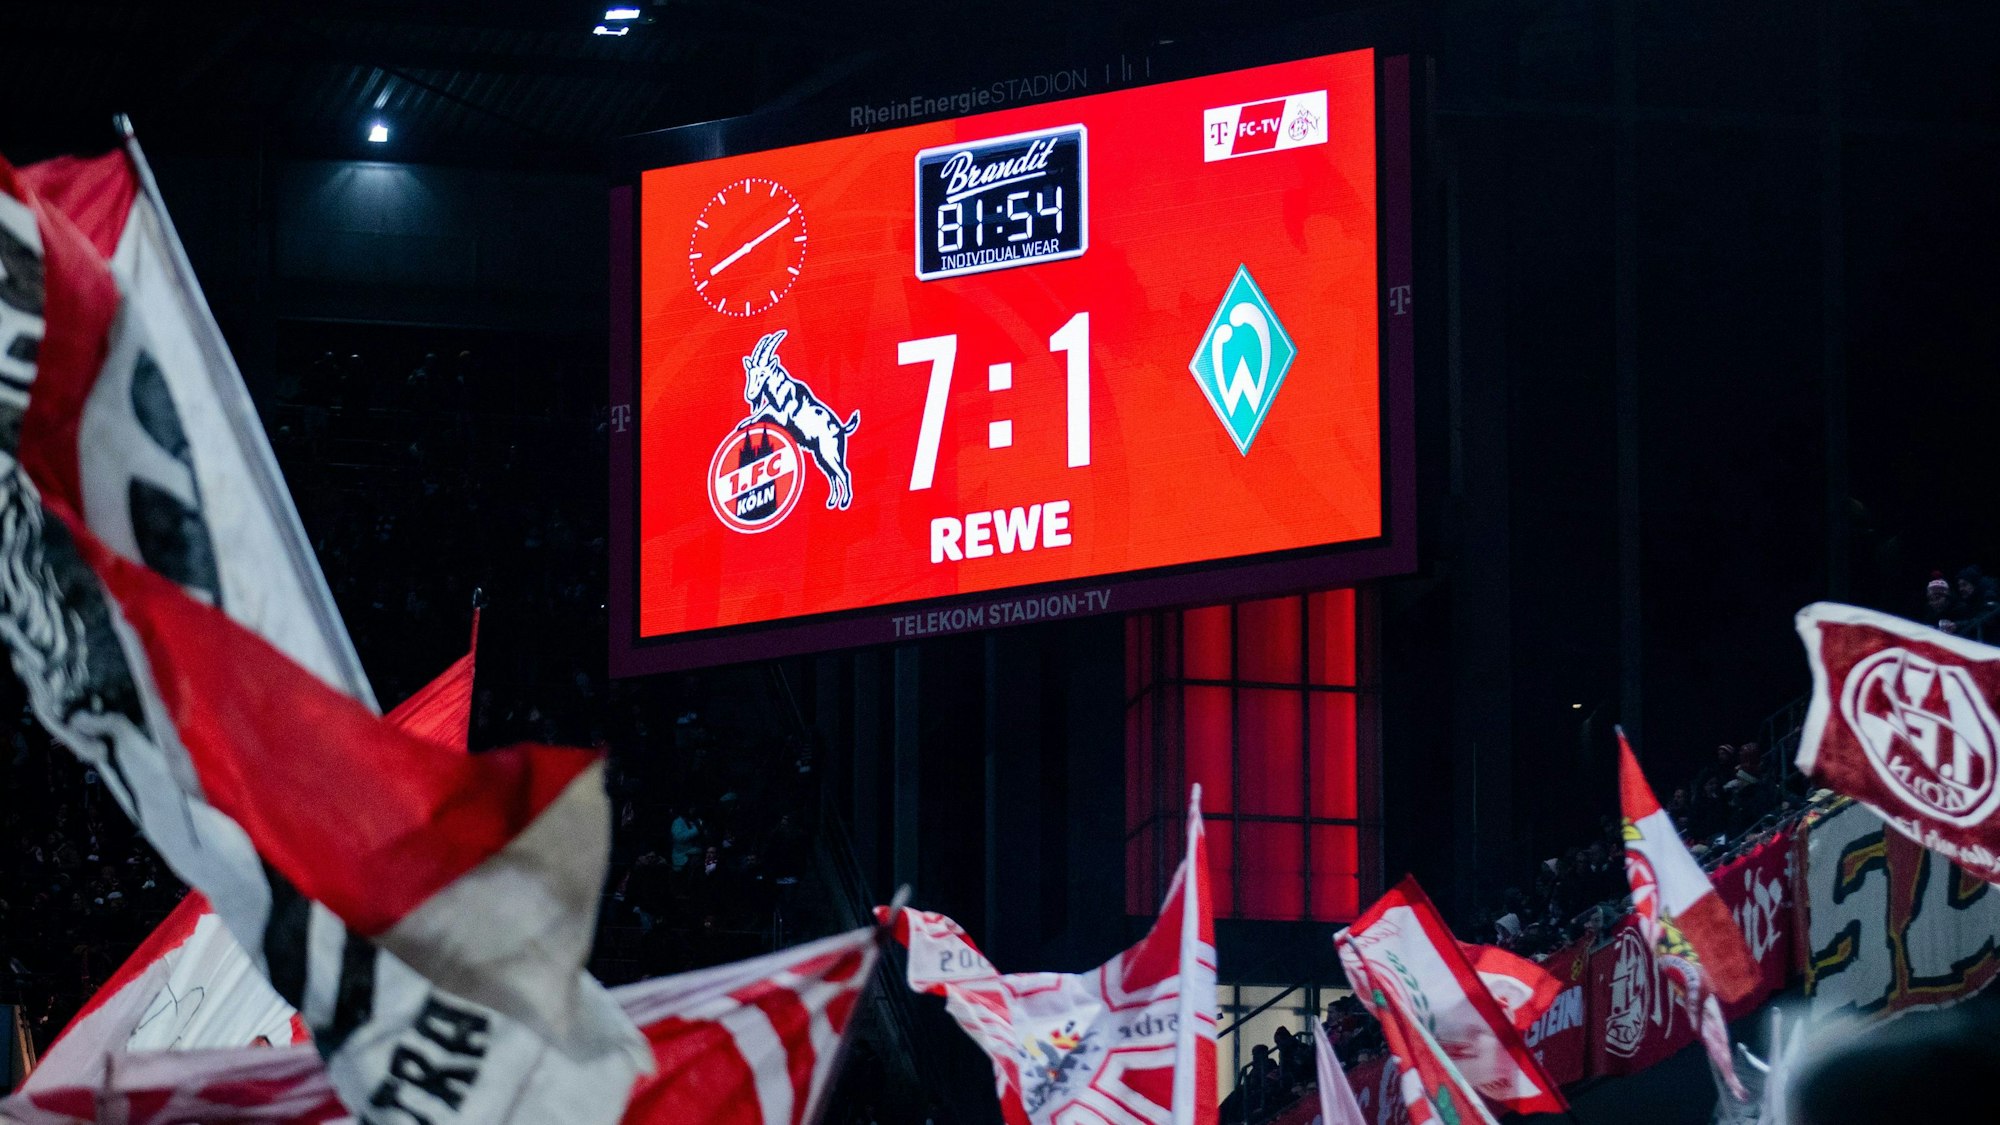 Der Spielstand von 7:1 wird auf der Anzeigetafel im RheinEnergieStadion angezeigt.